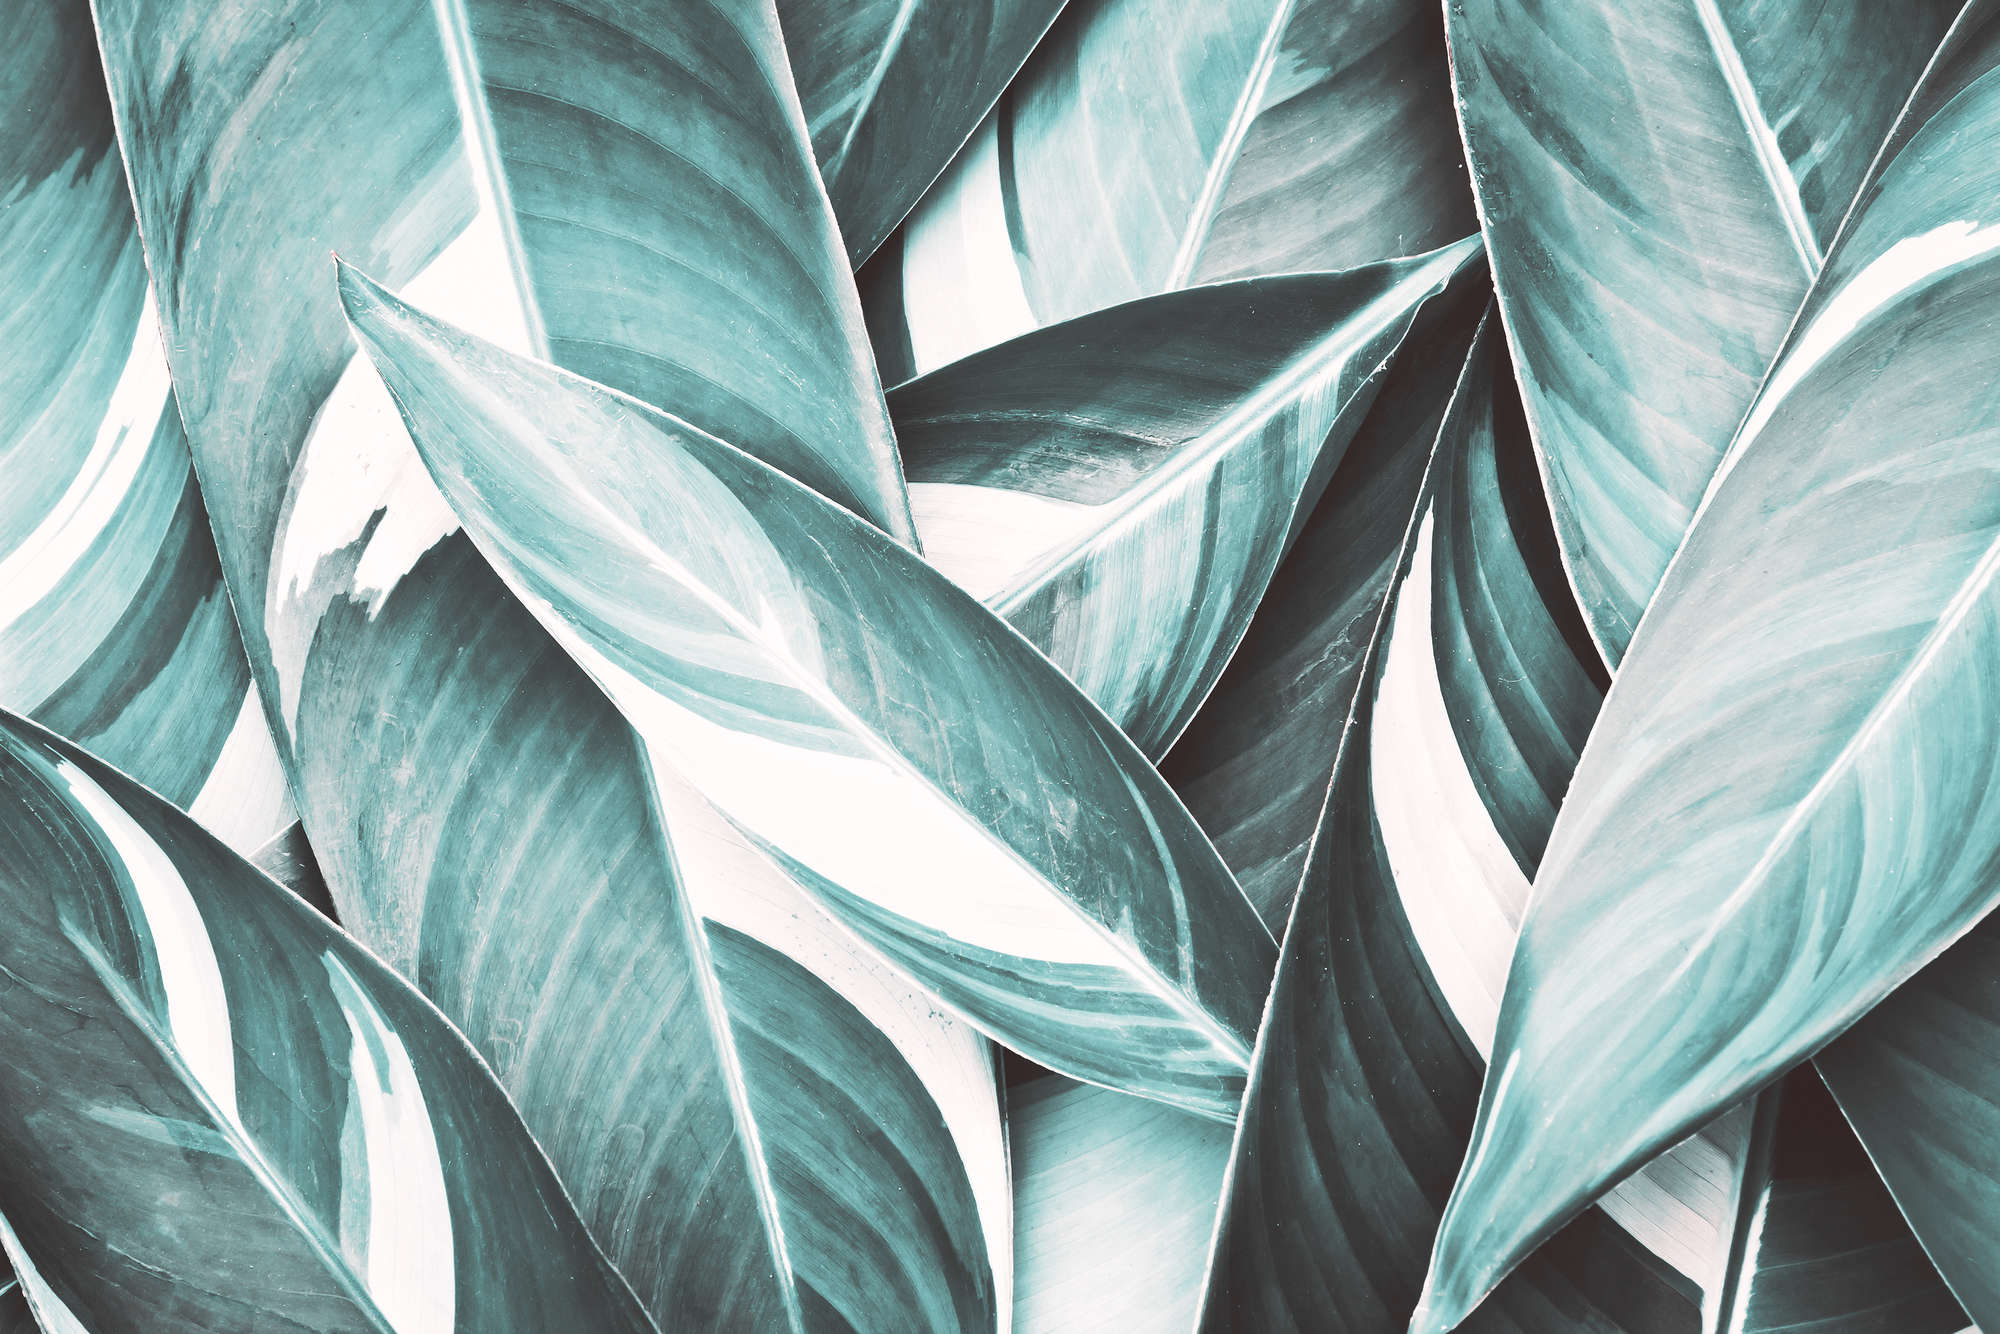             Carta da parati natura motivo foglie di palma grigio su tessuto non tessuto testurizzato
        